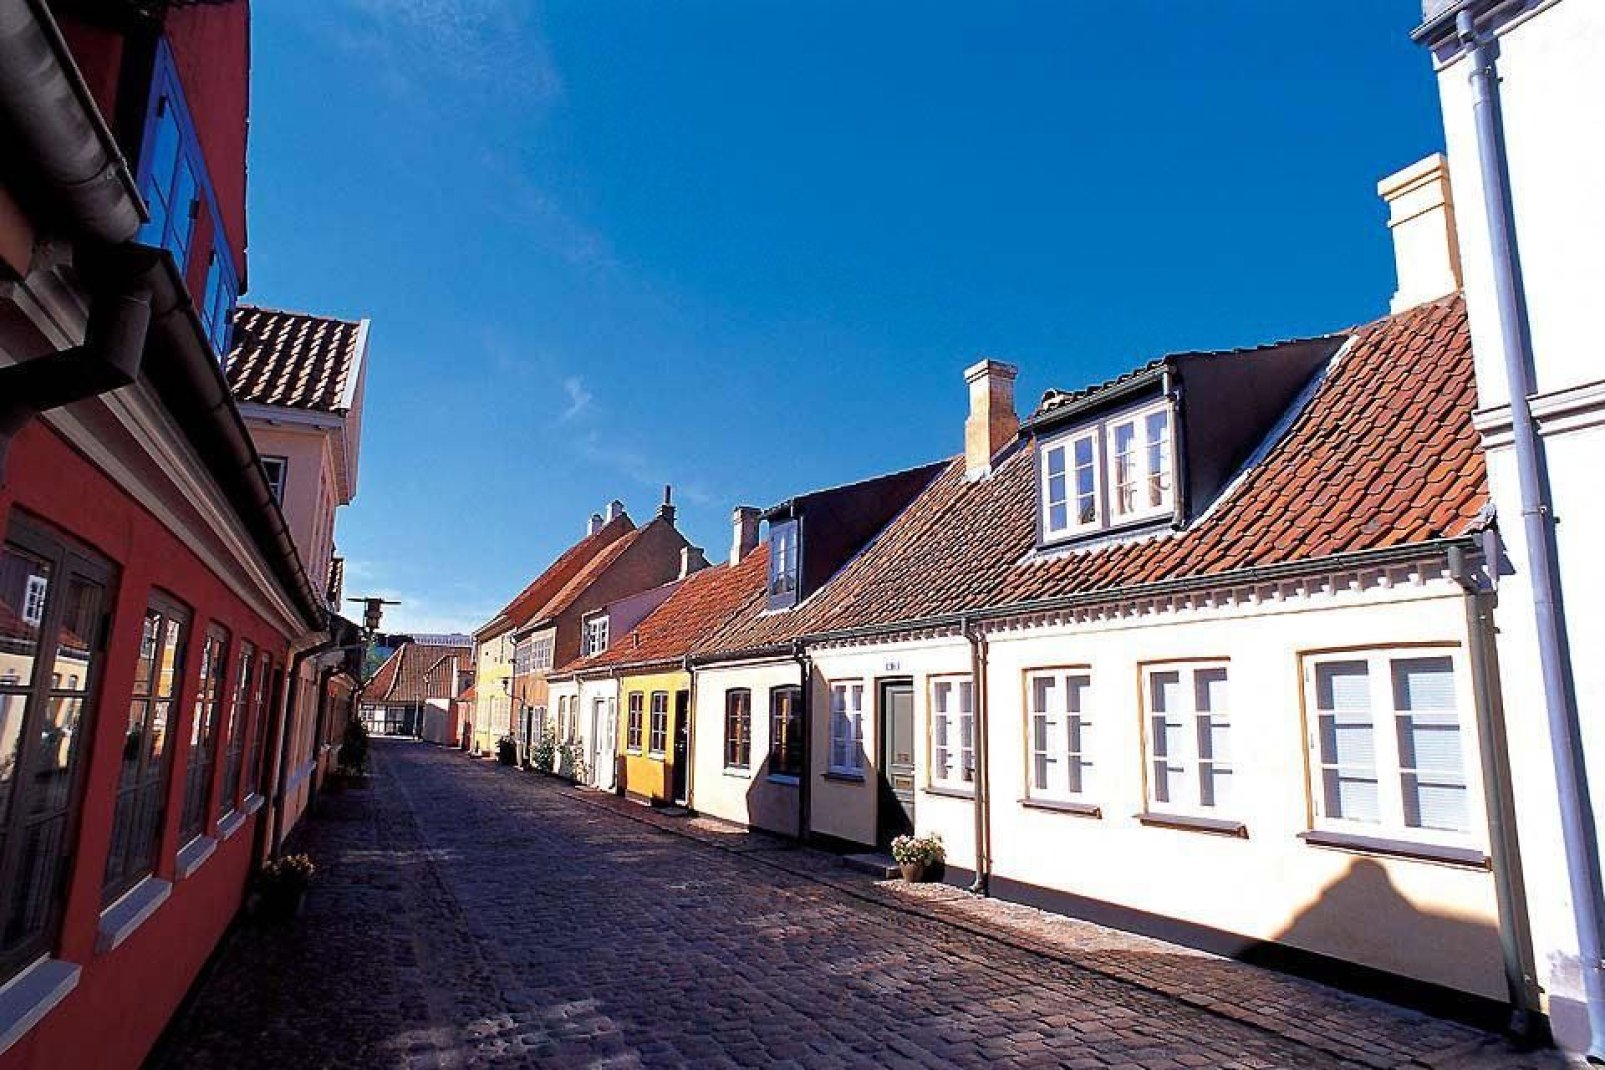 Odense ist nicht direkt am Meer gelegen aber trotzdem vom Wasser geprägt.